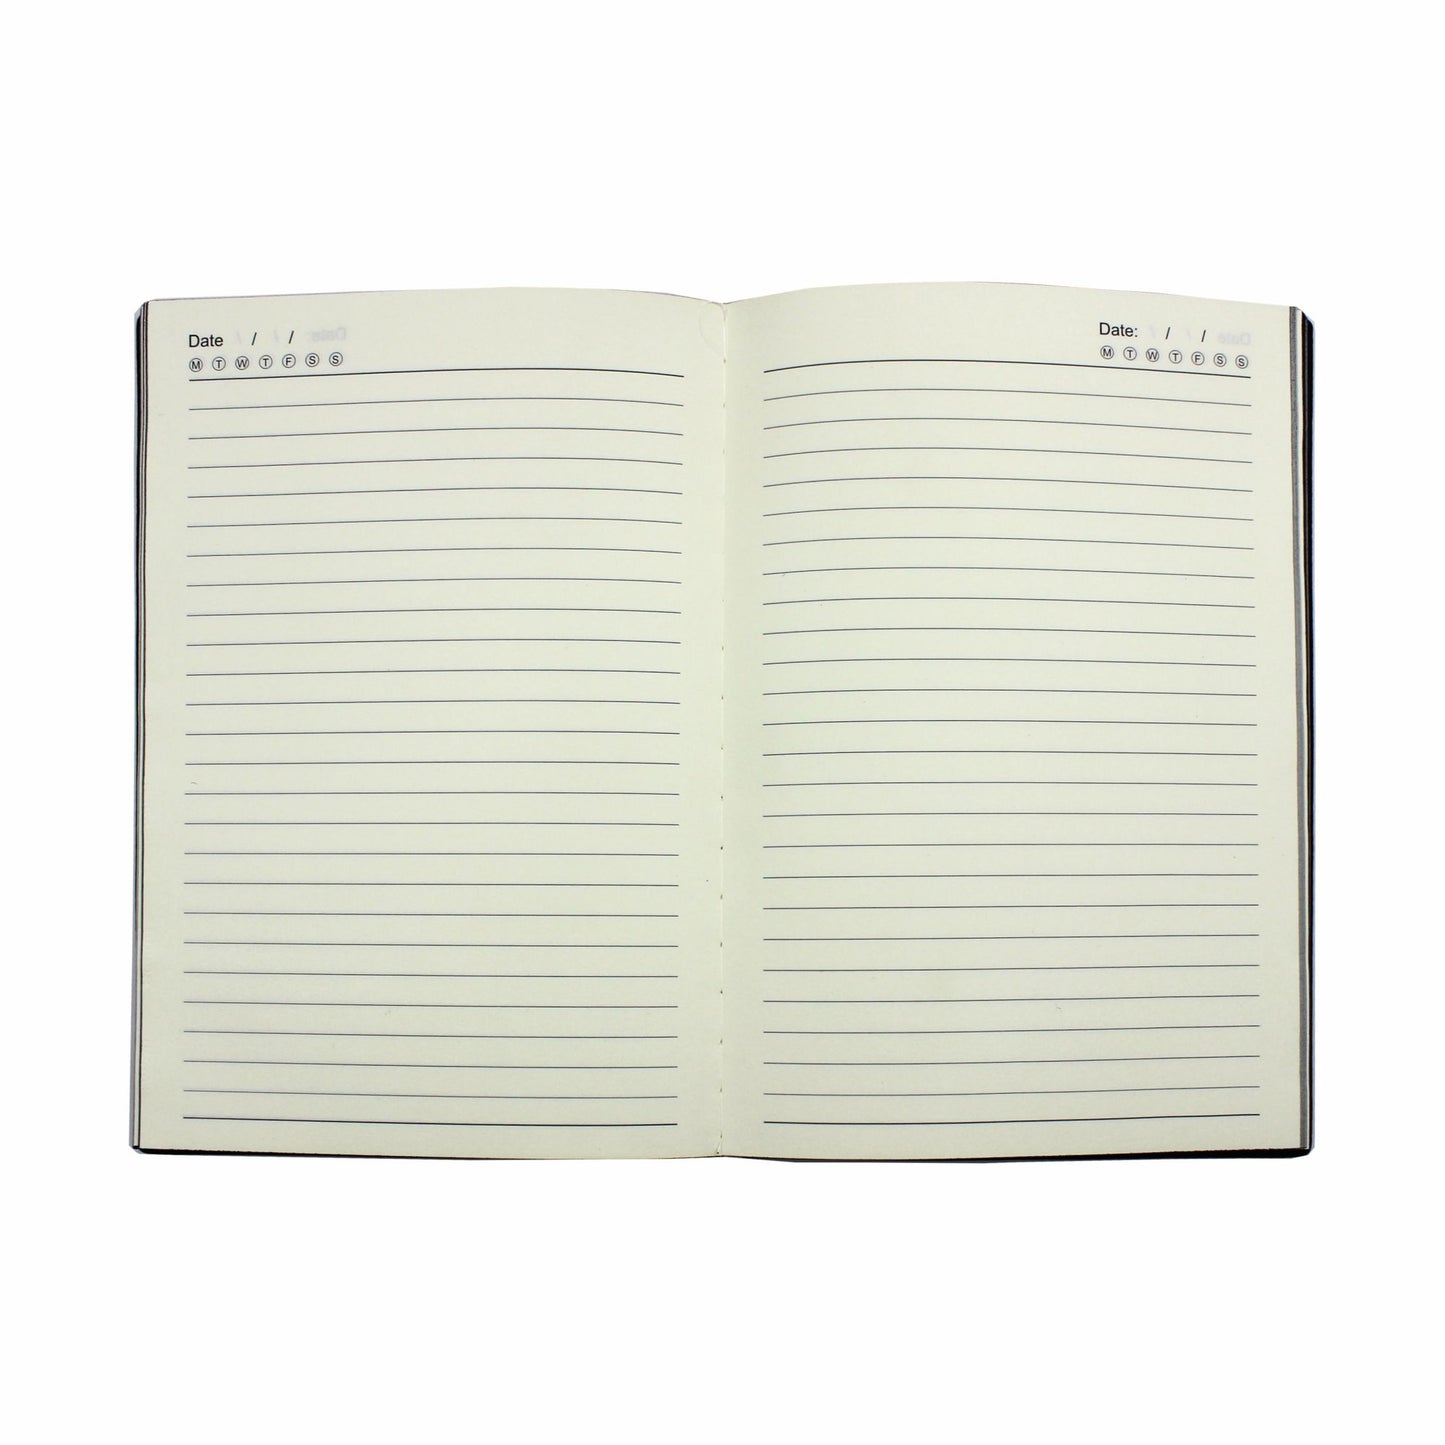 D’ORO A5 Journal Notebook